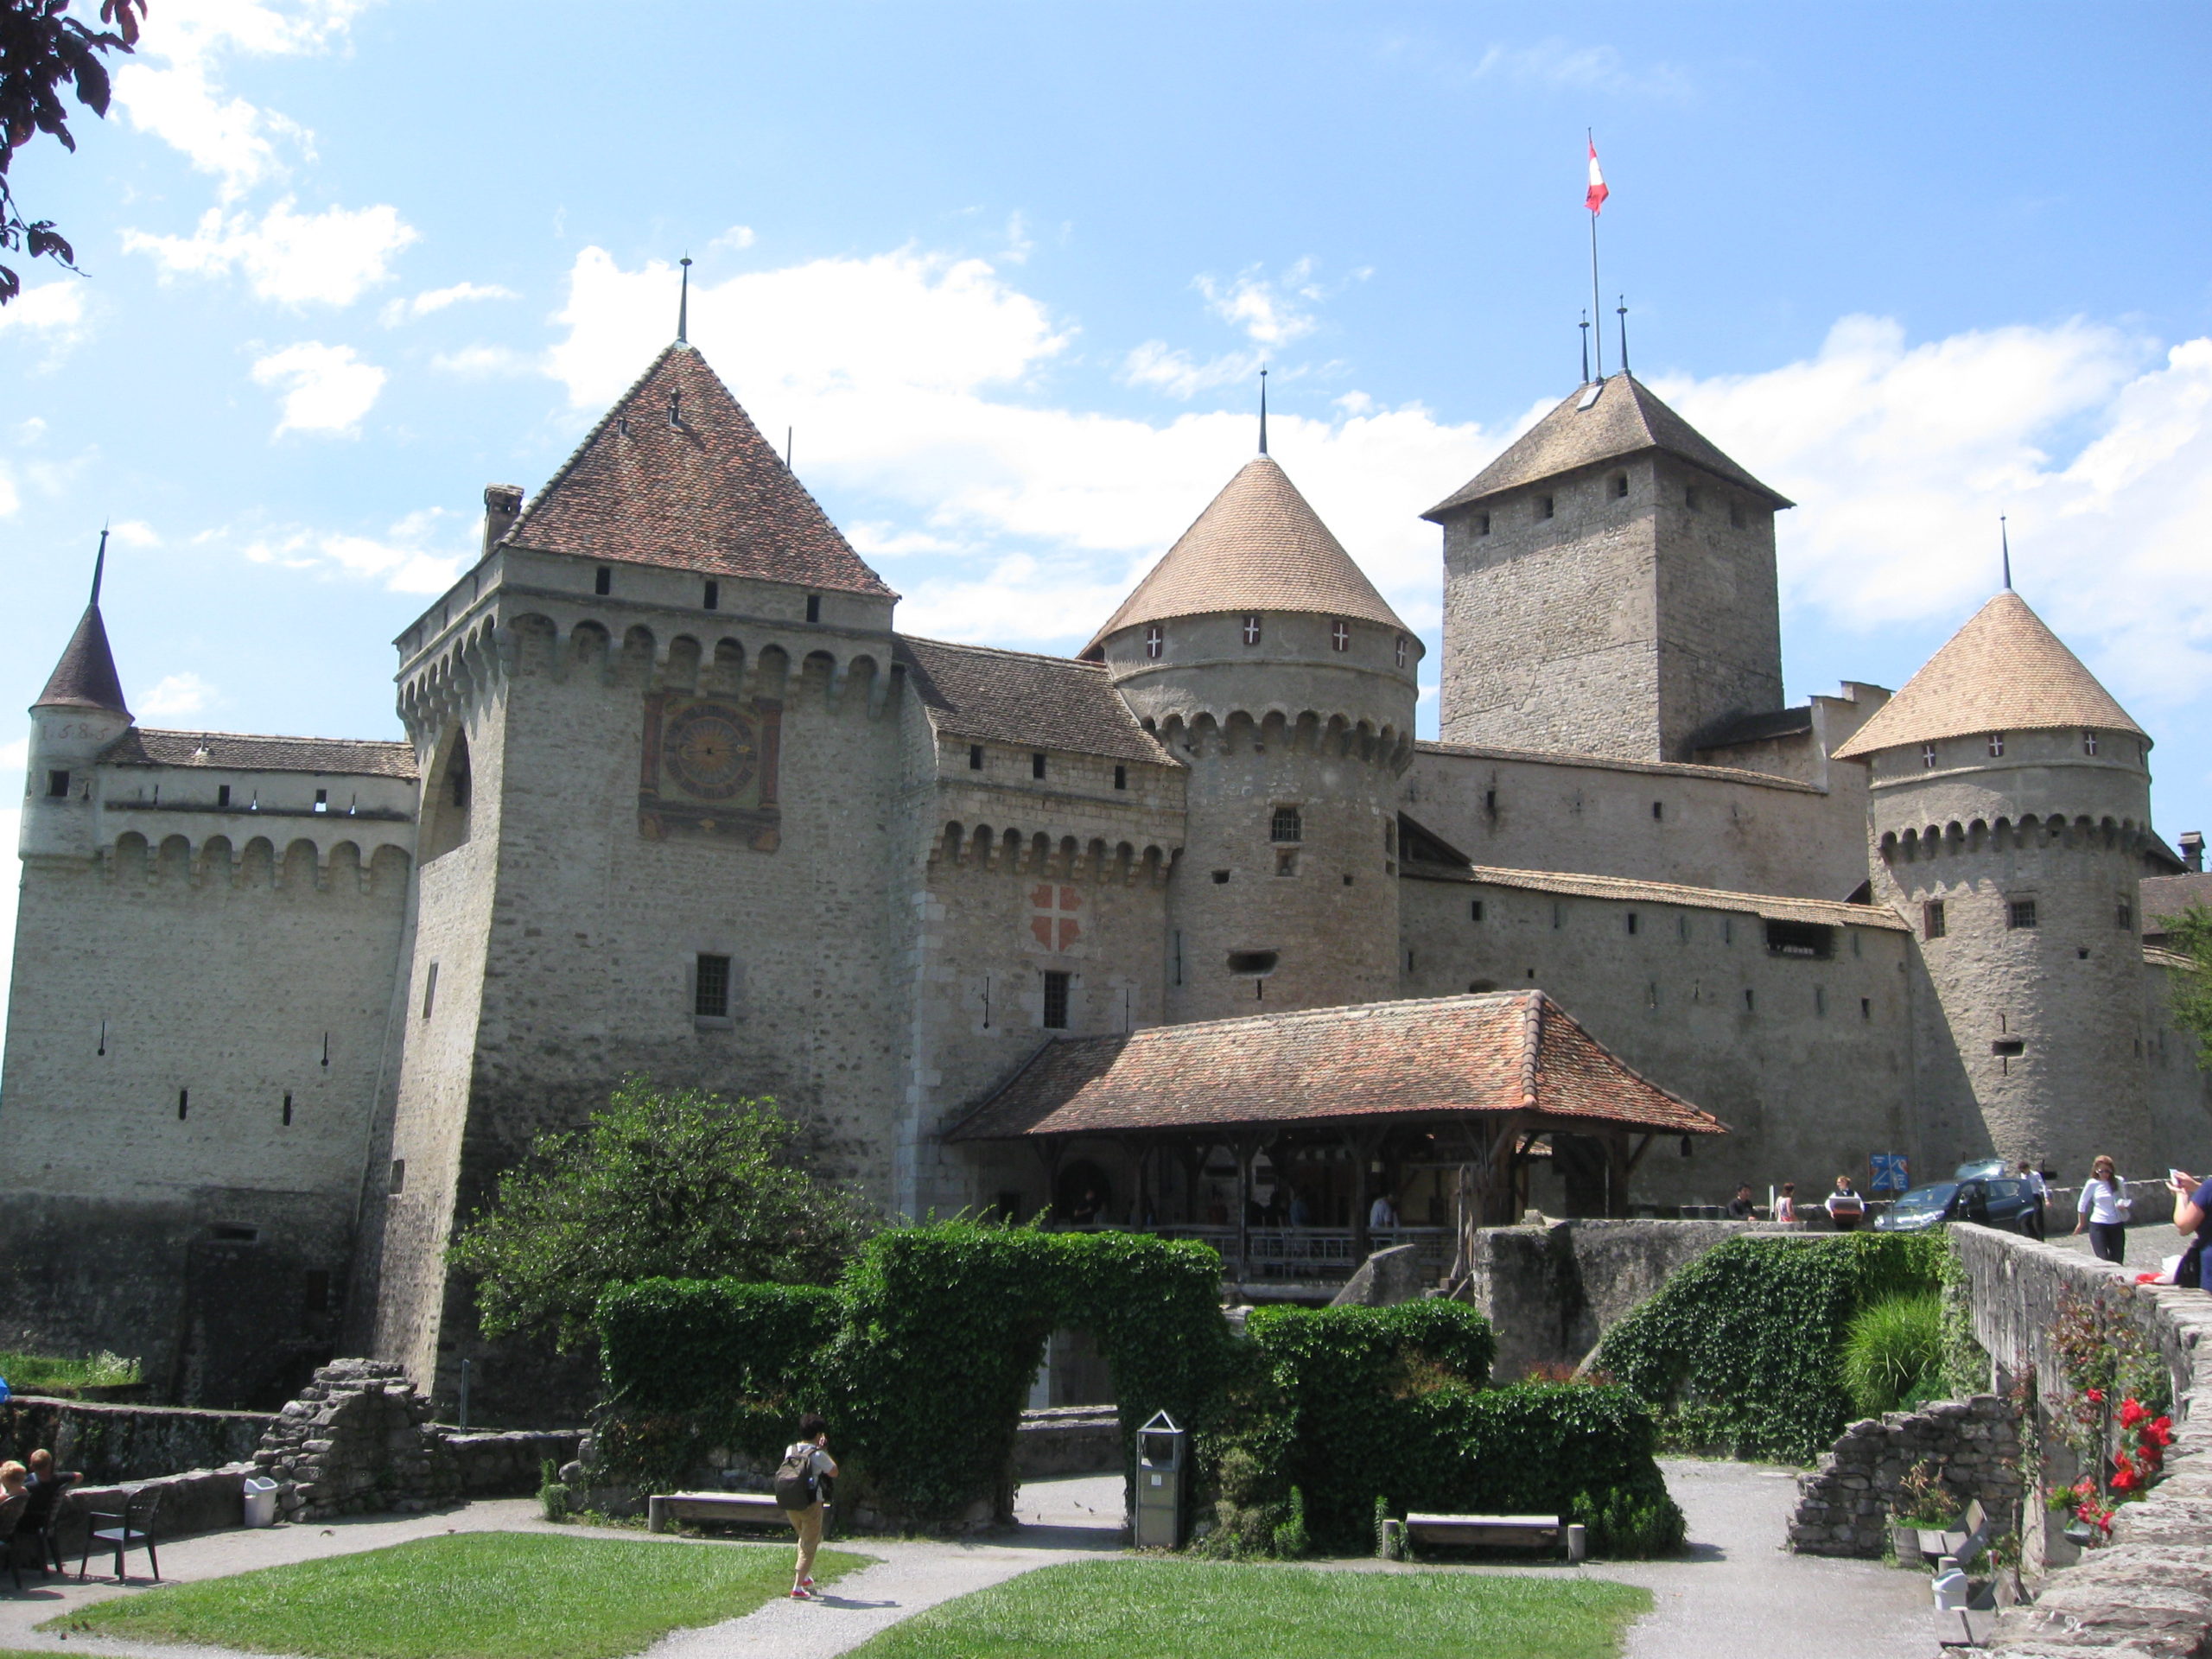 Château de Chillon: The “Coolest” Castle